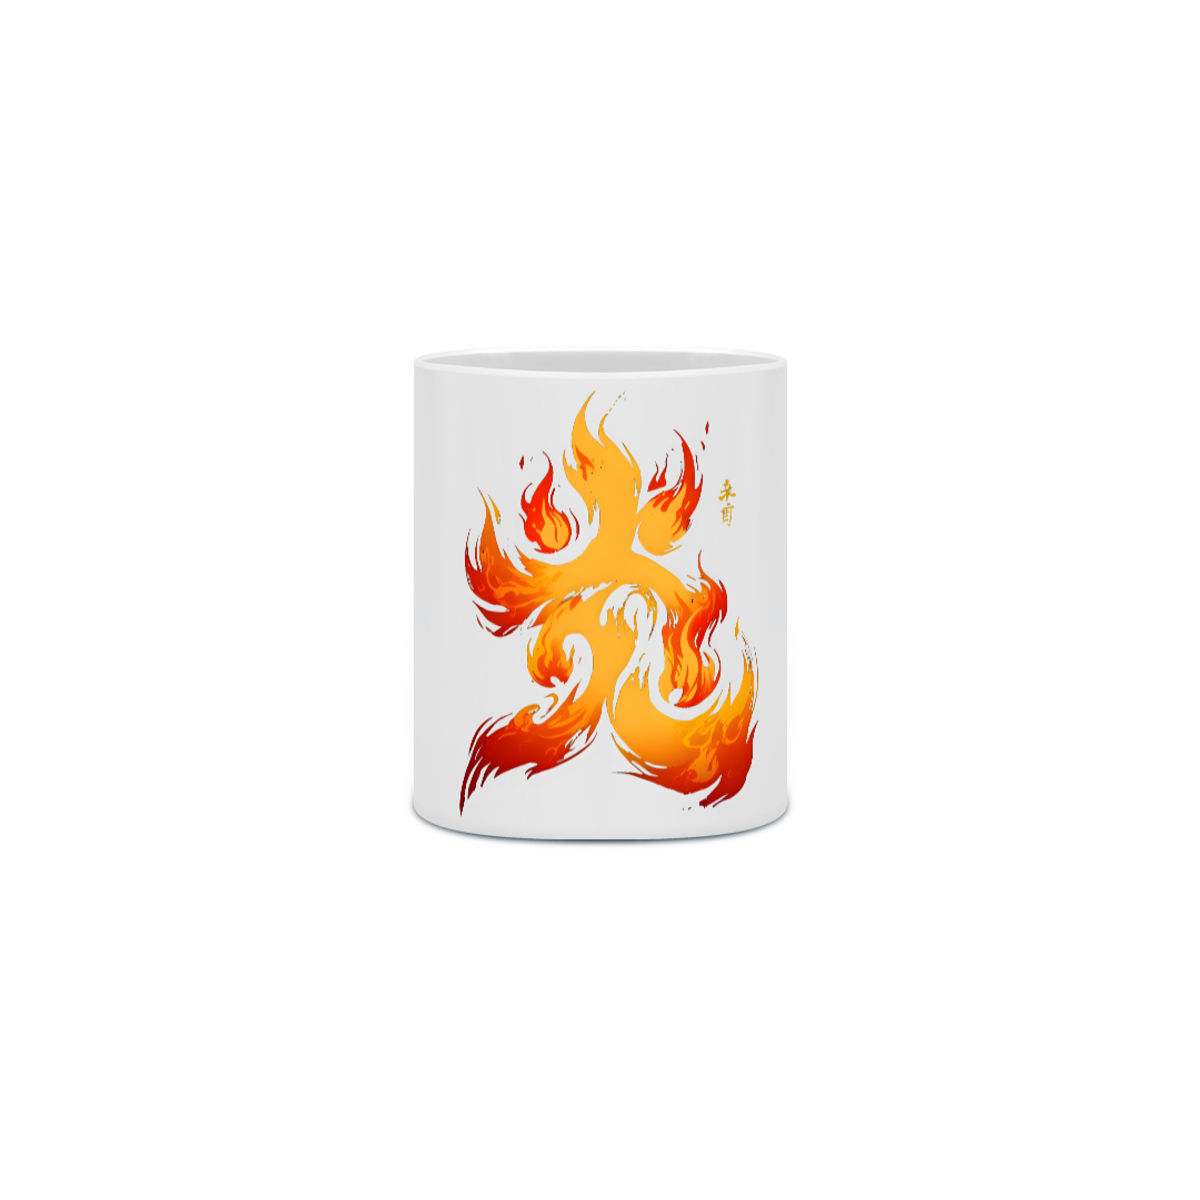 Nome do produto: Demon Slayer - Caneca Rengoku Flame